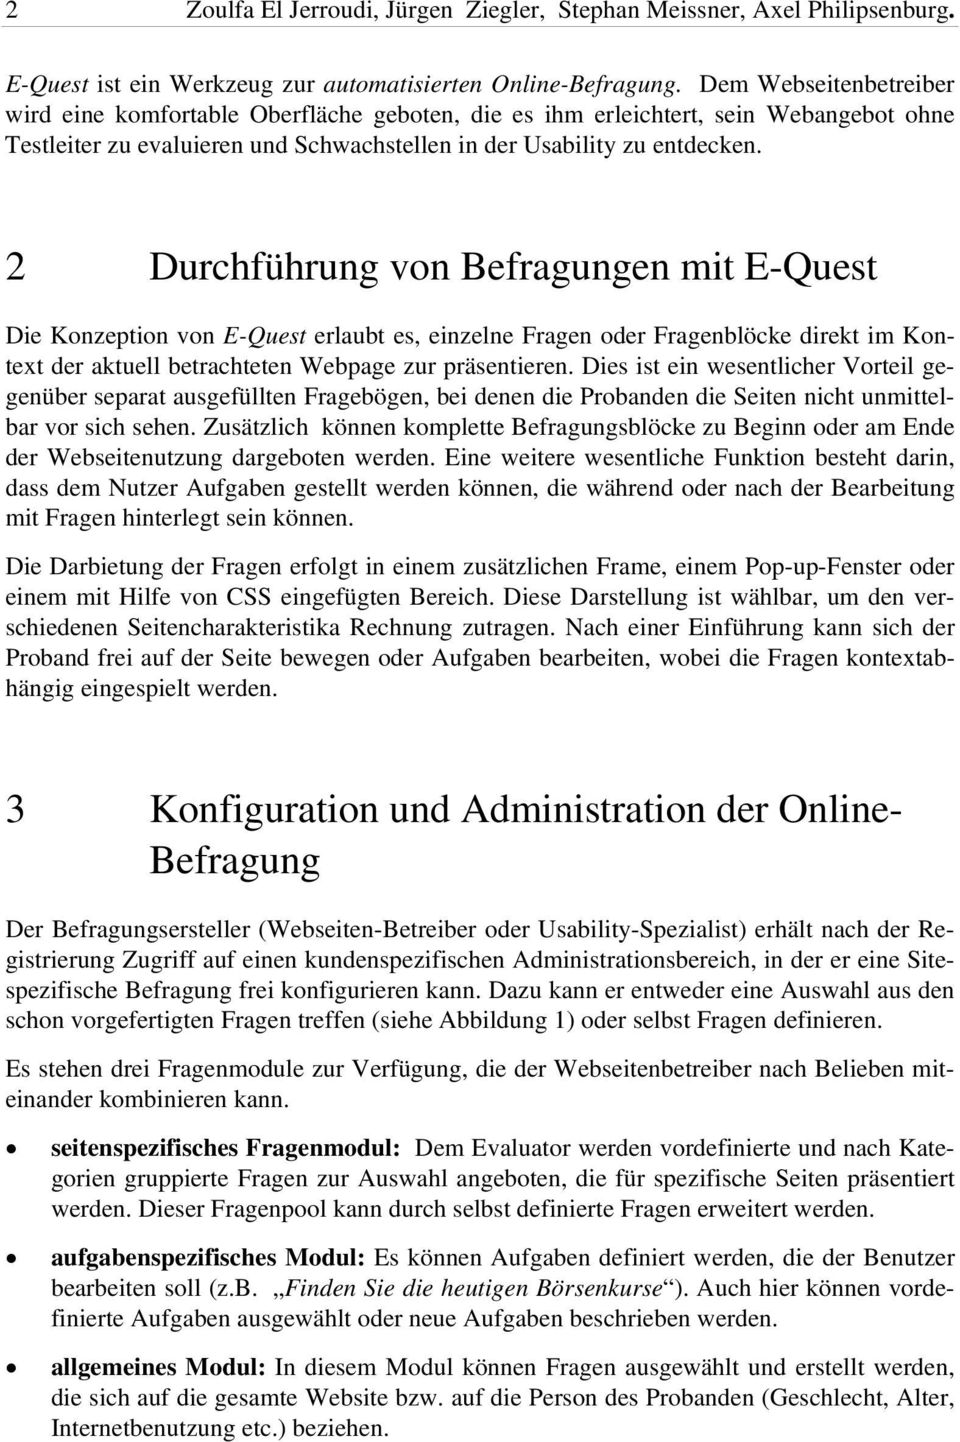 2 Durchführung von Befragungen mit E-Quest Die Konzeption von E-Quest erlaubt es, einzelne Fragen oder Fragenblöcke direkt im Kontext der aktuell betrachteten Webpage zur präsentieren.